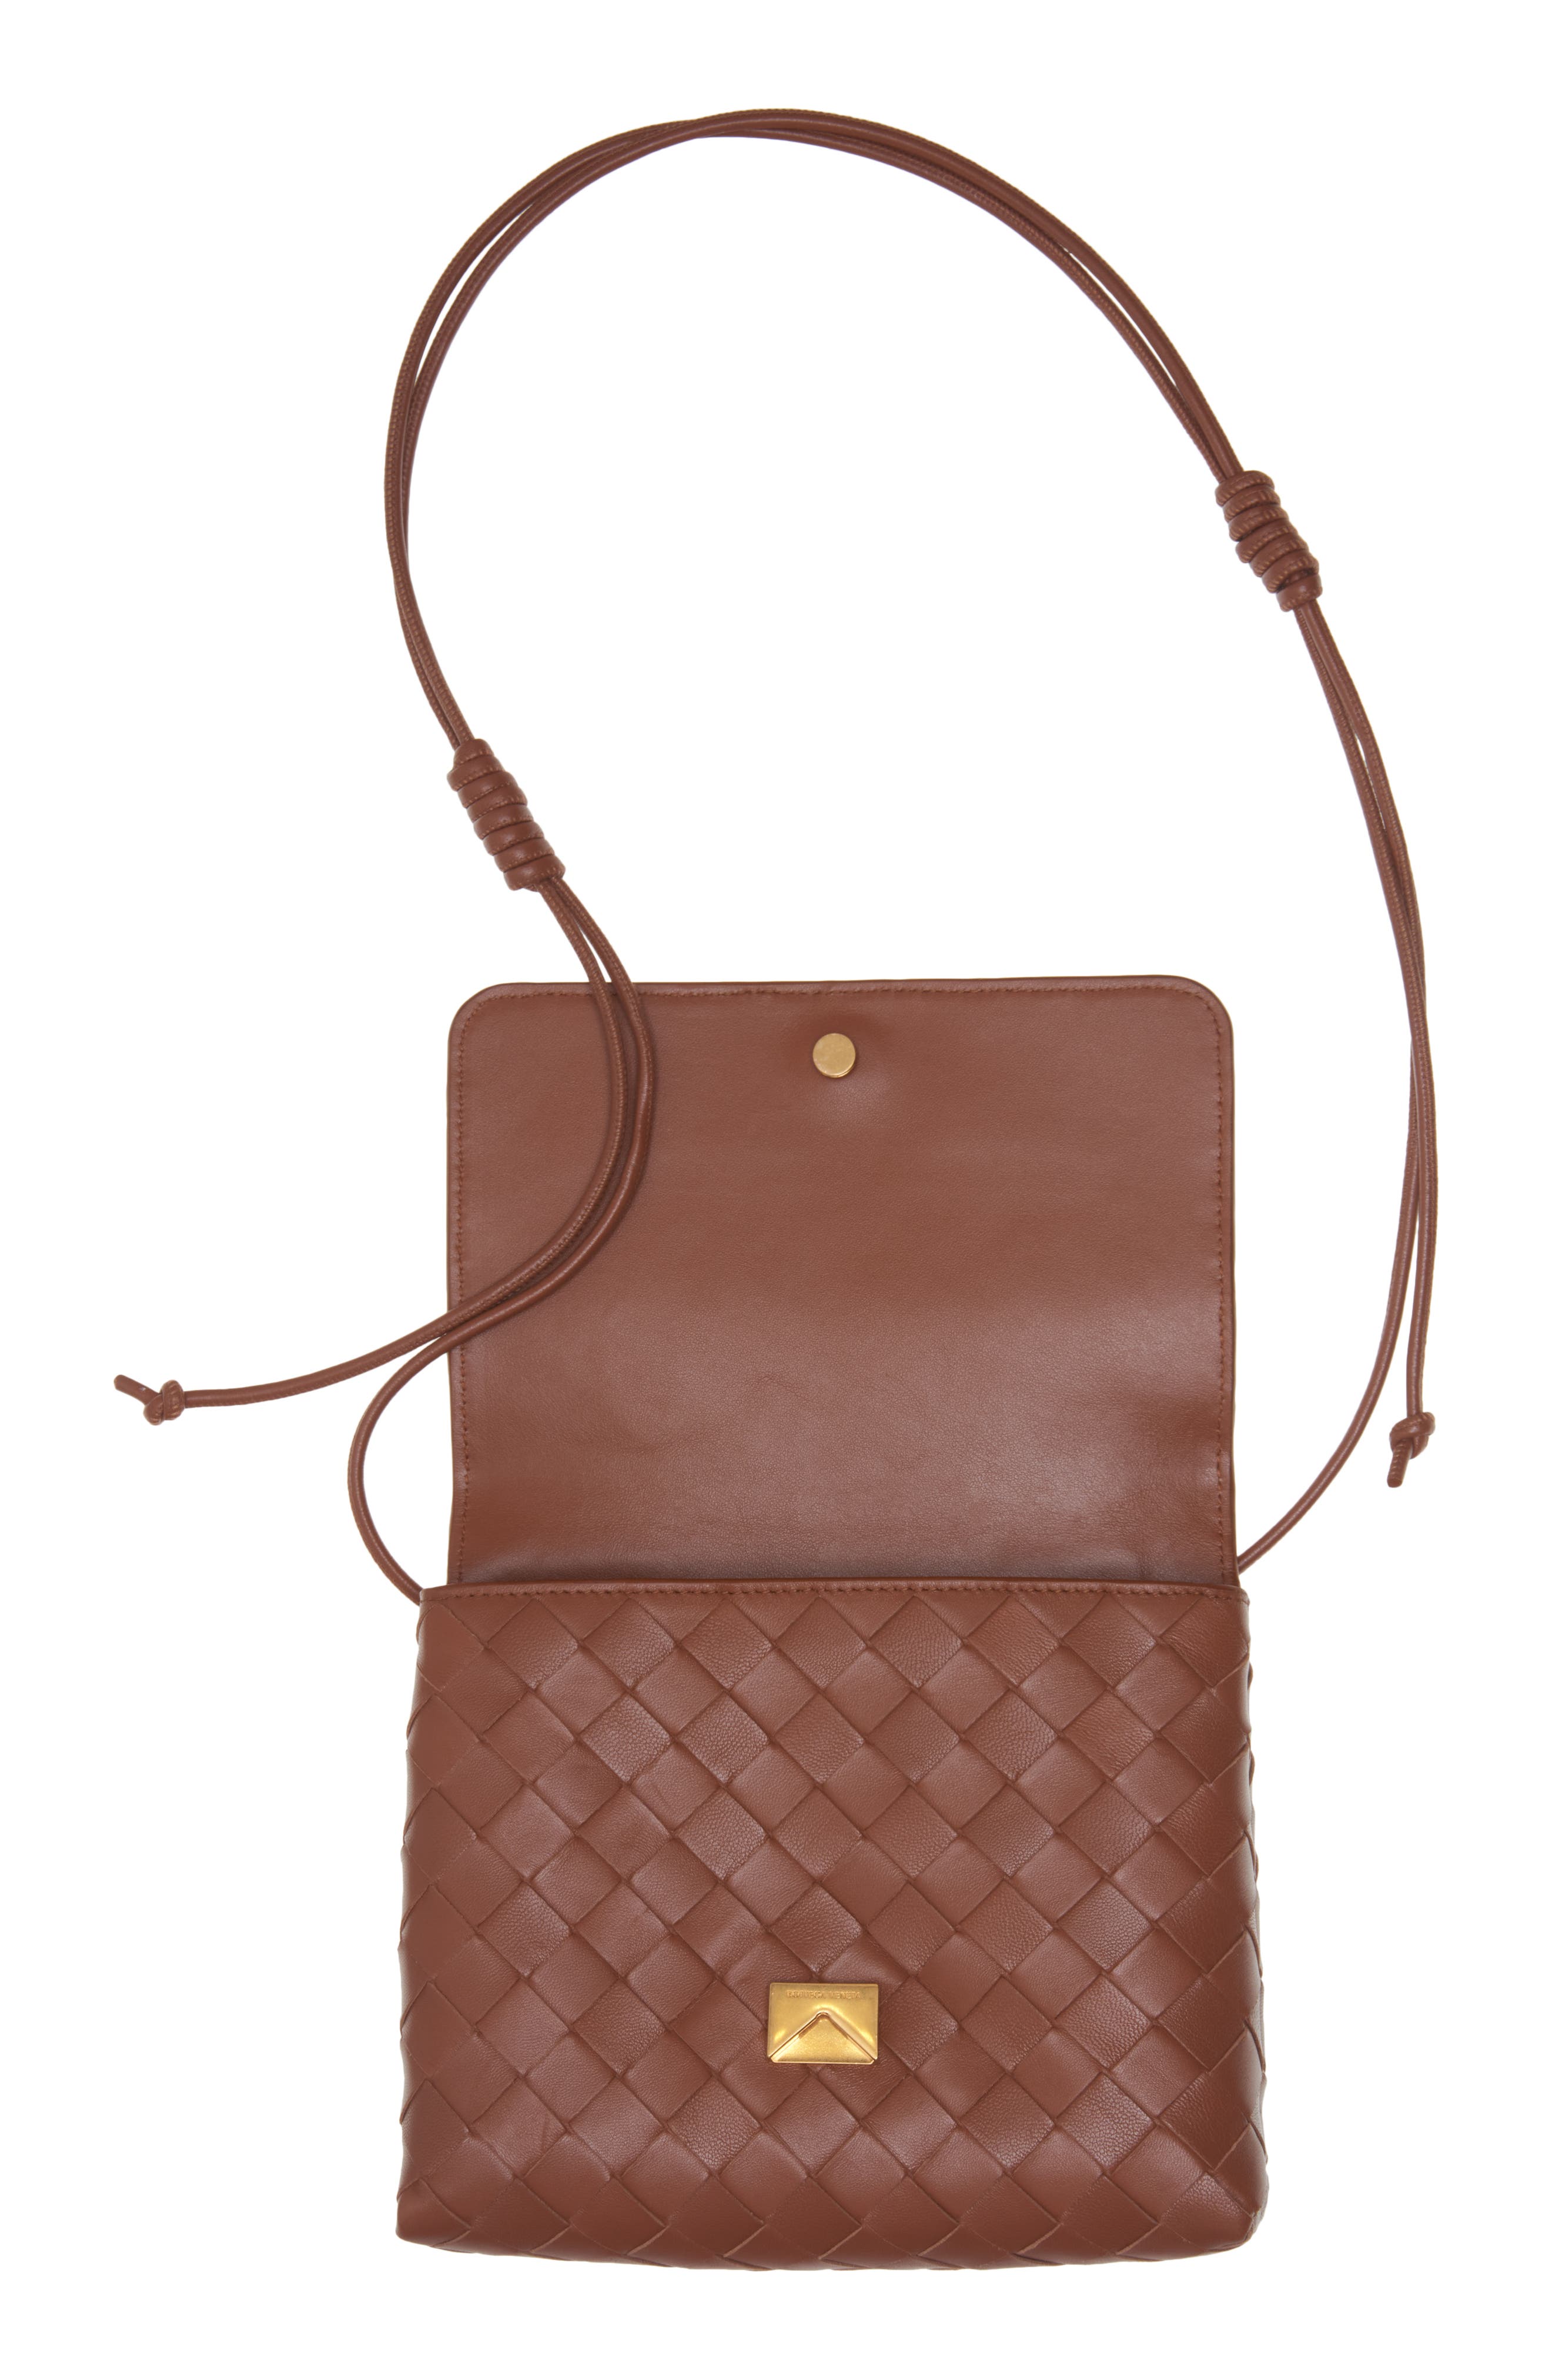 Bottega Veneta Mini Intrecciato Leather Crossbody Bag in 1807 Glacier-Gold